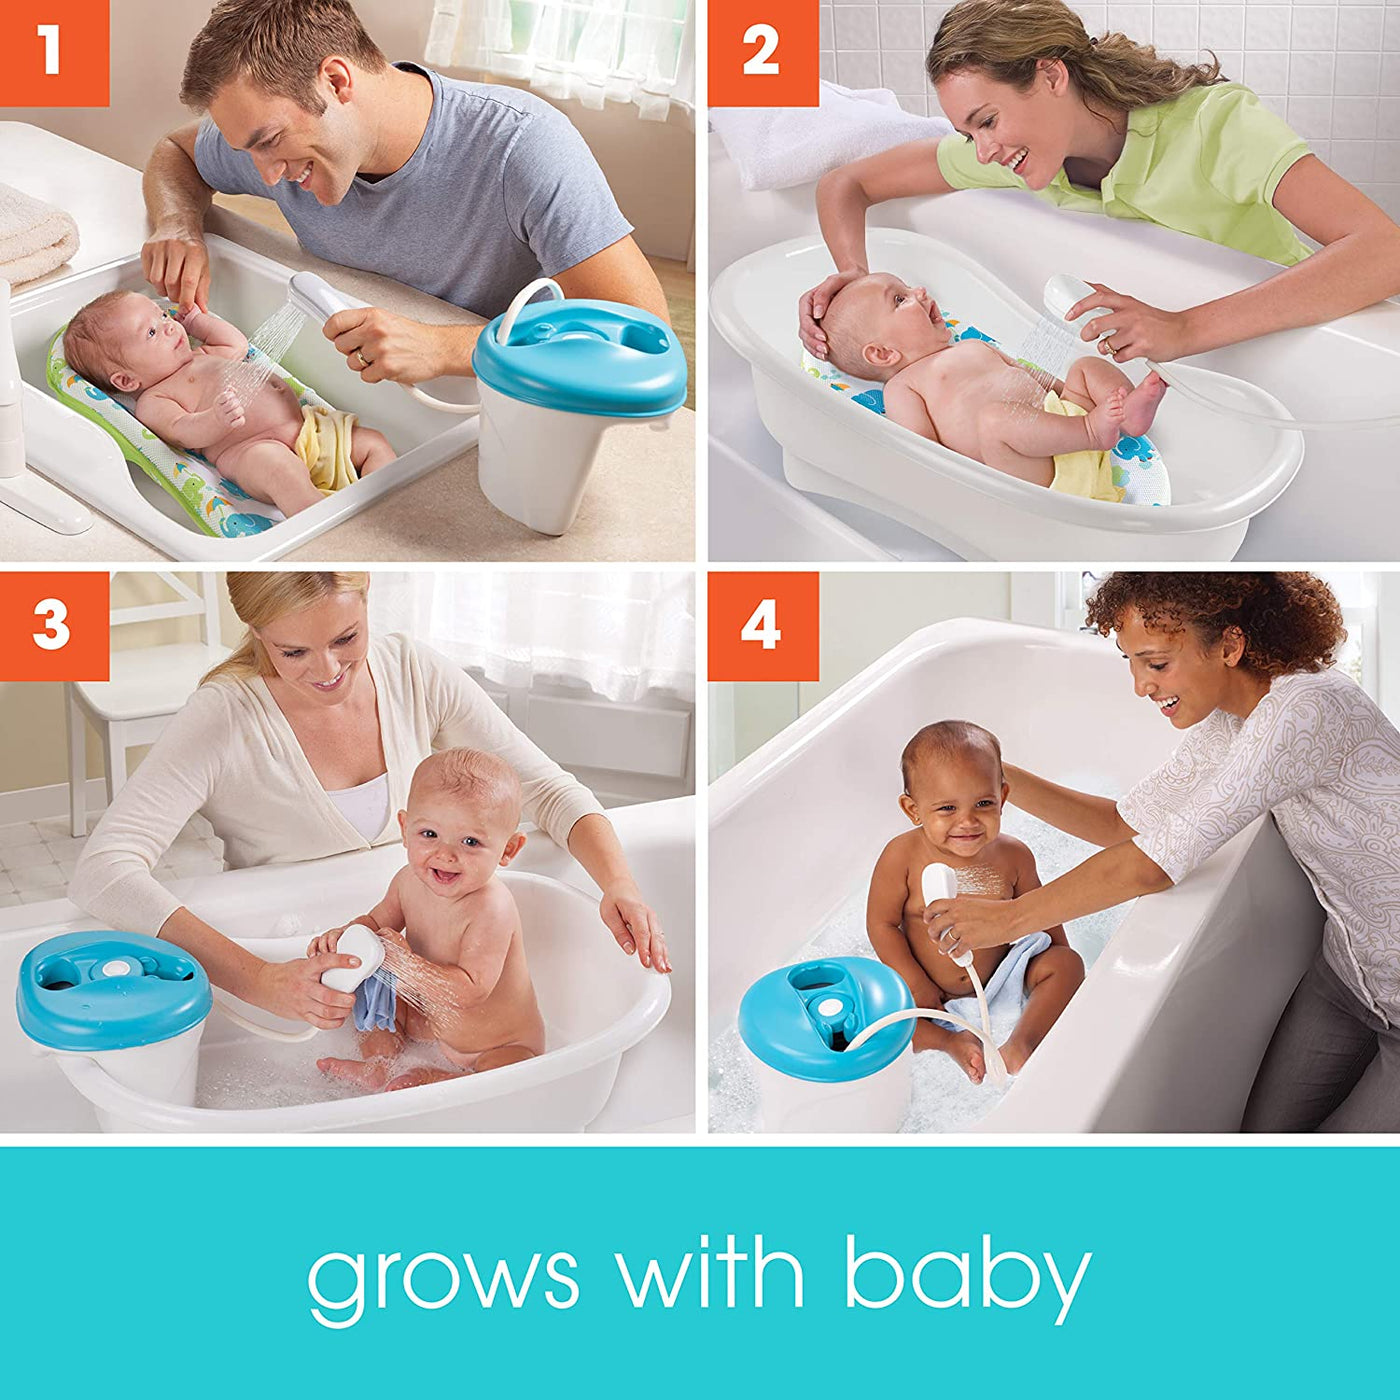 Newborn-to-Toddler Bath Center & Shower (Neutral) | Summer Infant